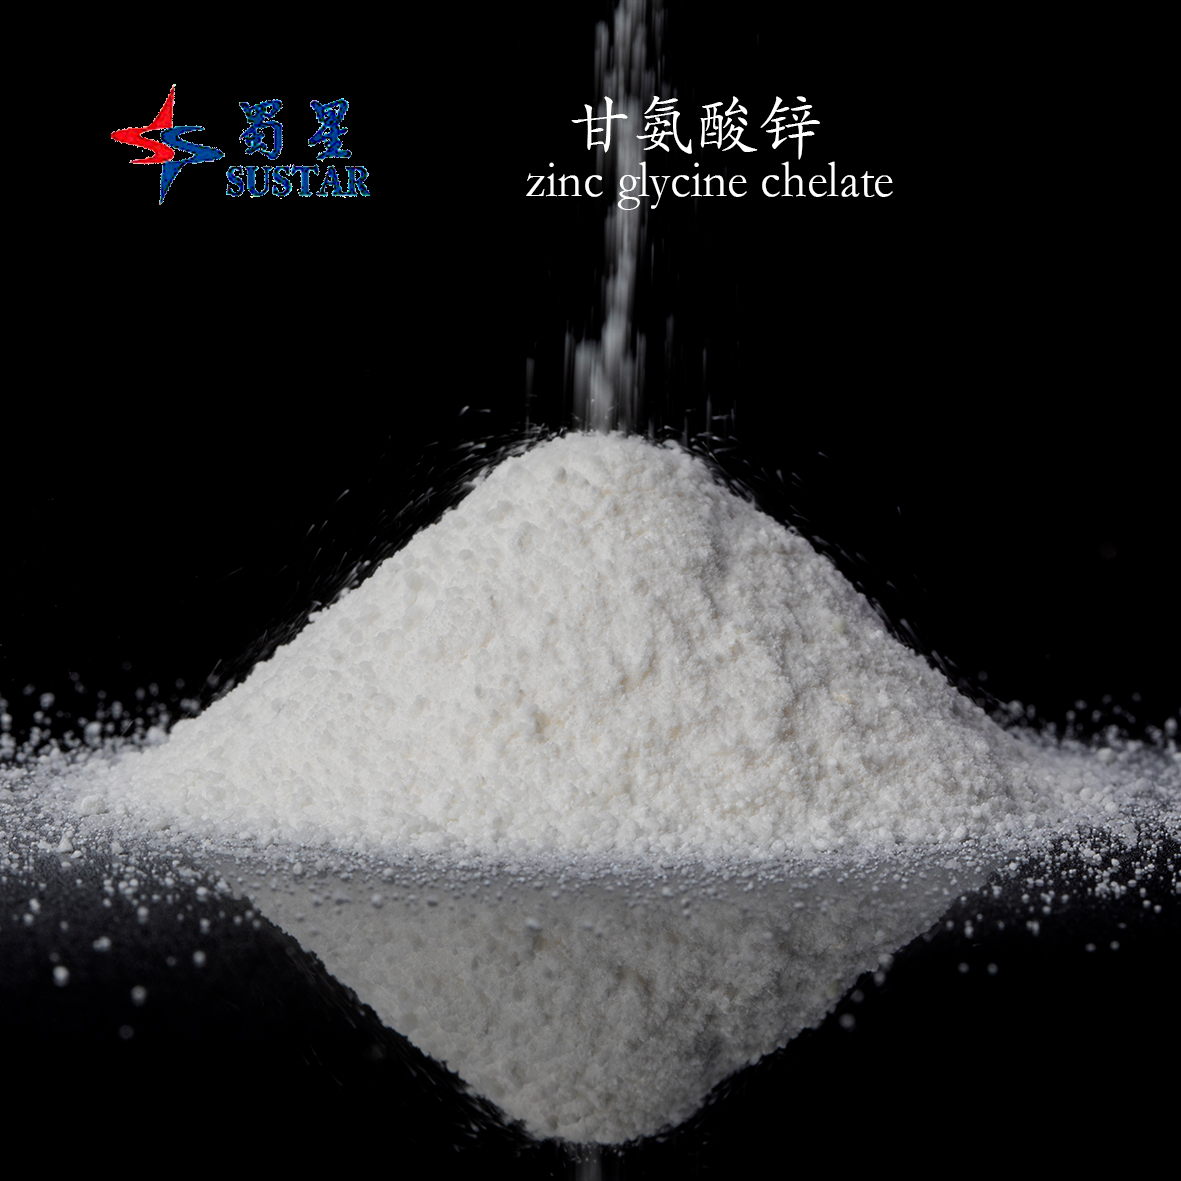 Chelat de glicină de zinc, compus complex de zinc, pulbere cristalină albă, aditiv pentru hrana animalelor